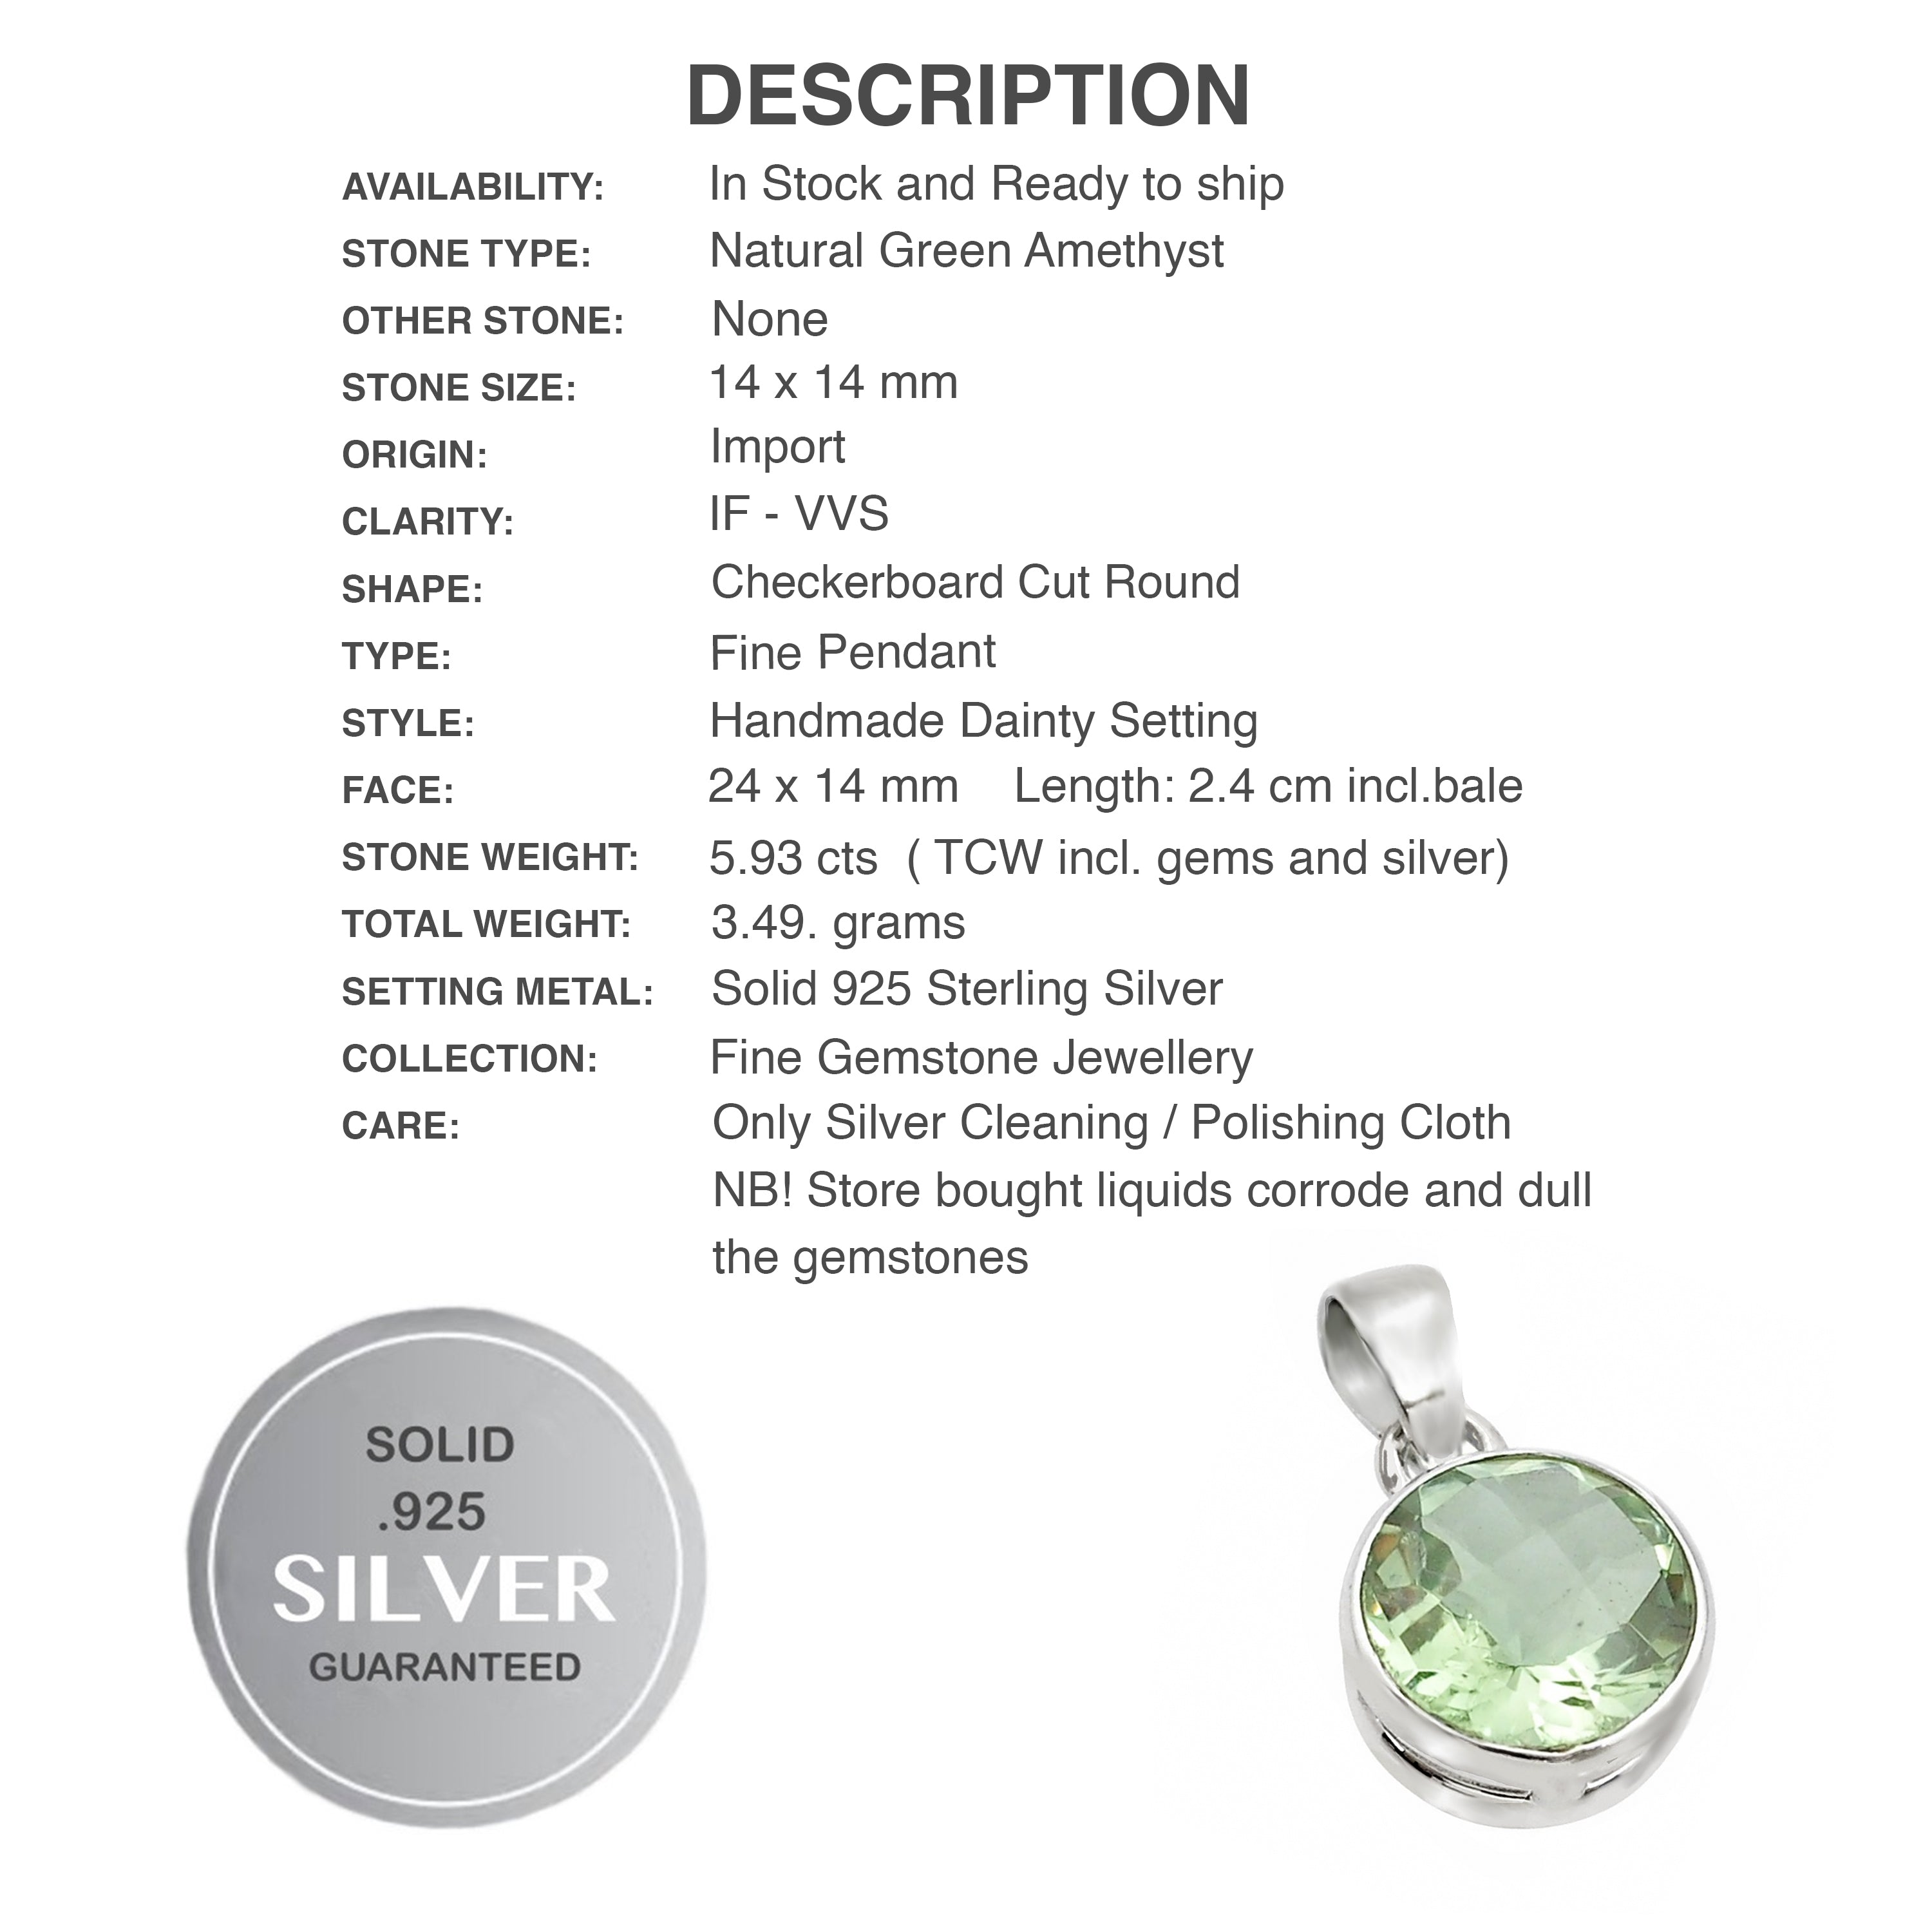 Handmade Natural Green Amethyst (Prasiolite) Round Gemstone .925 Silver Pendant Necklace